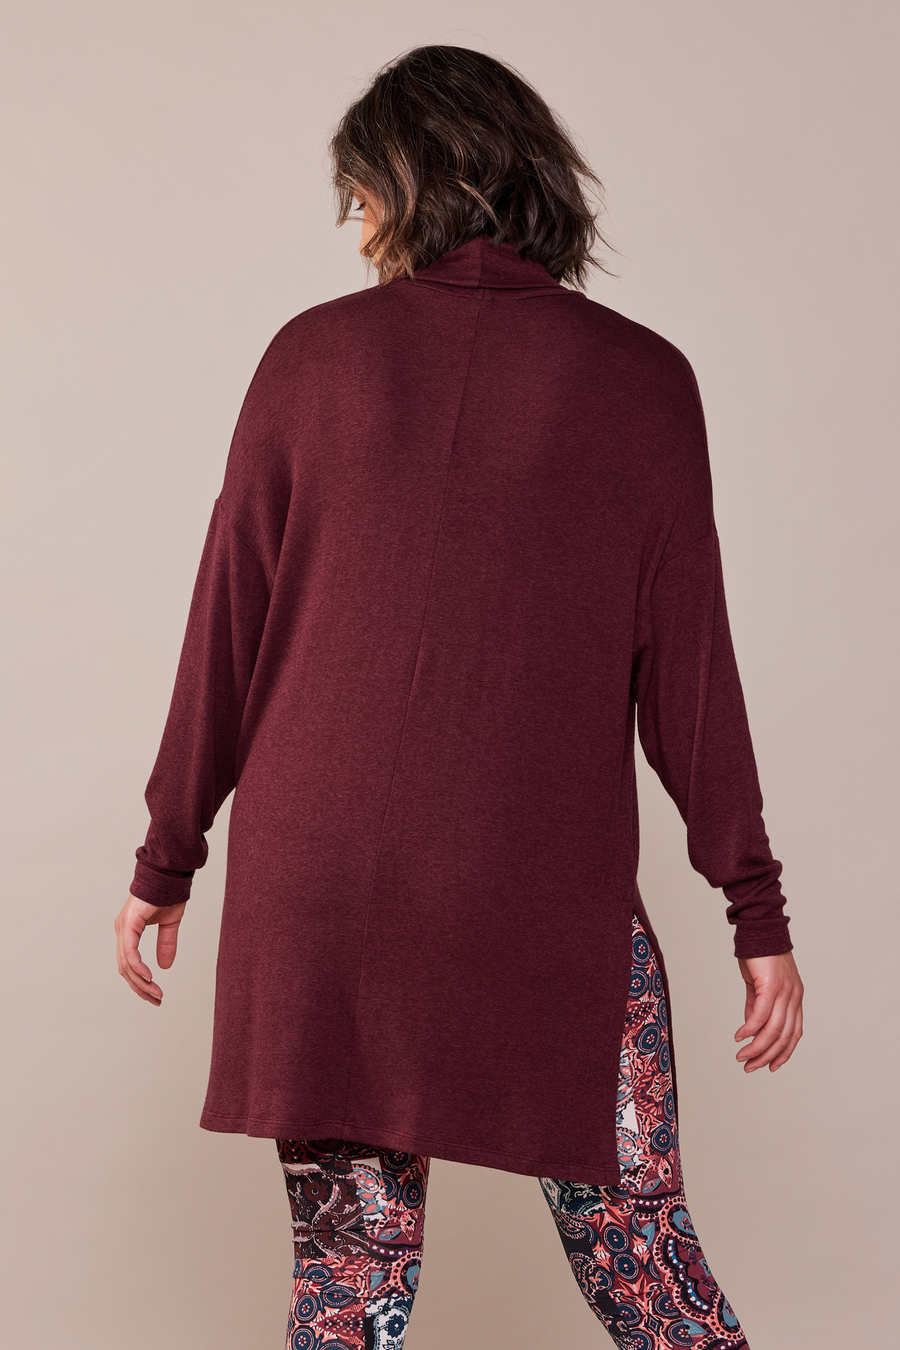 Tunique pour femme en tricot léger rouge bourgogne à manches longues et col baveux faite au Québec. 